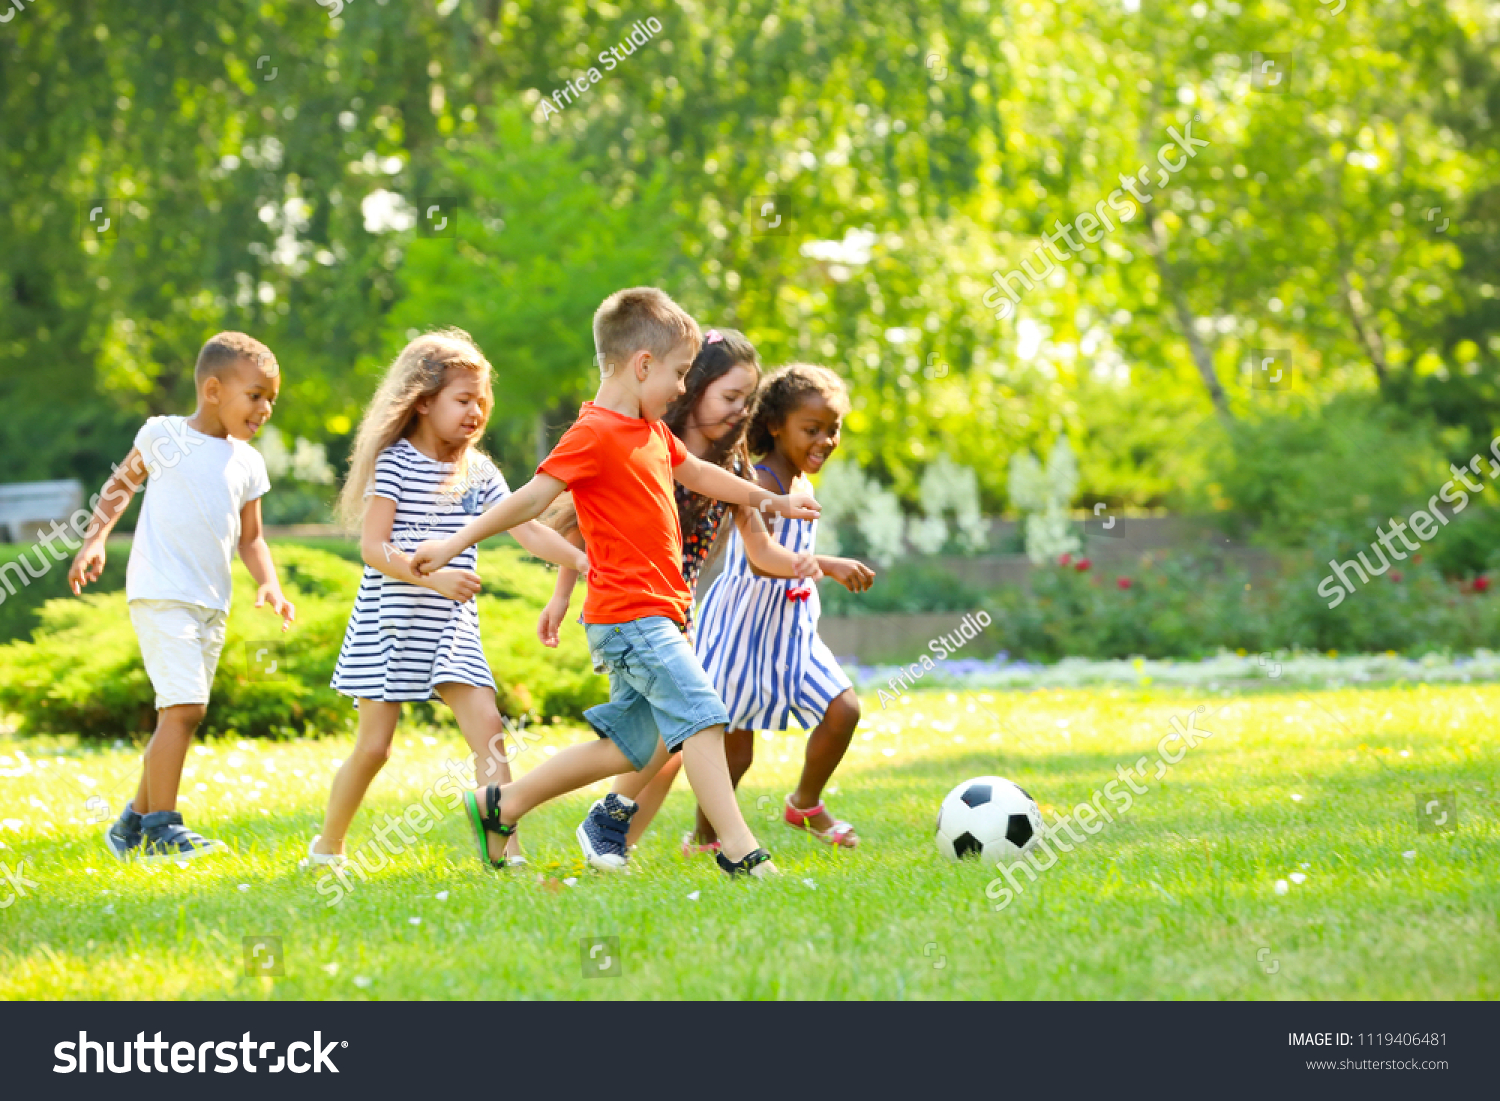 Cute little children playing football outdoors #1119406481